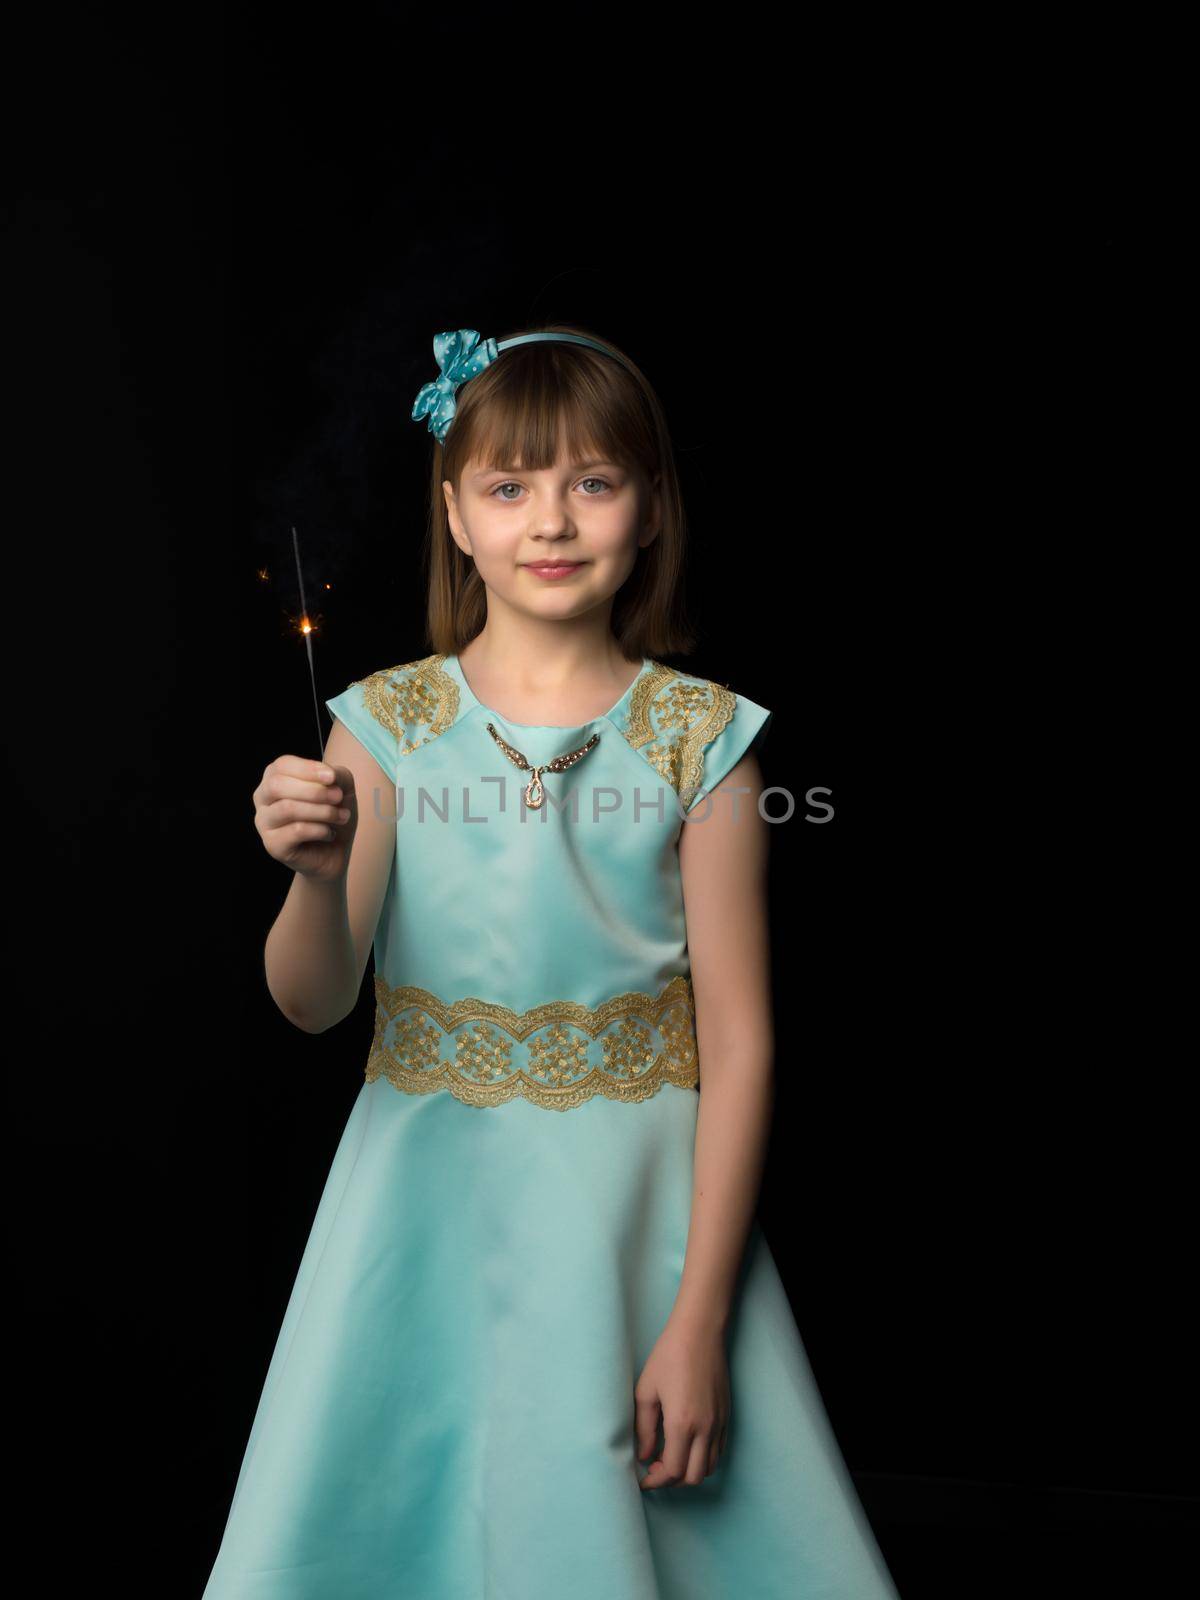 little girl holding firewors on black background